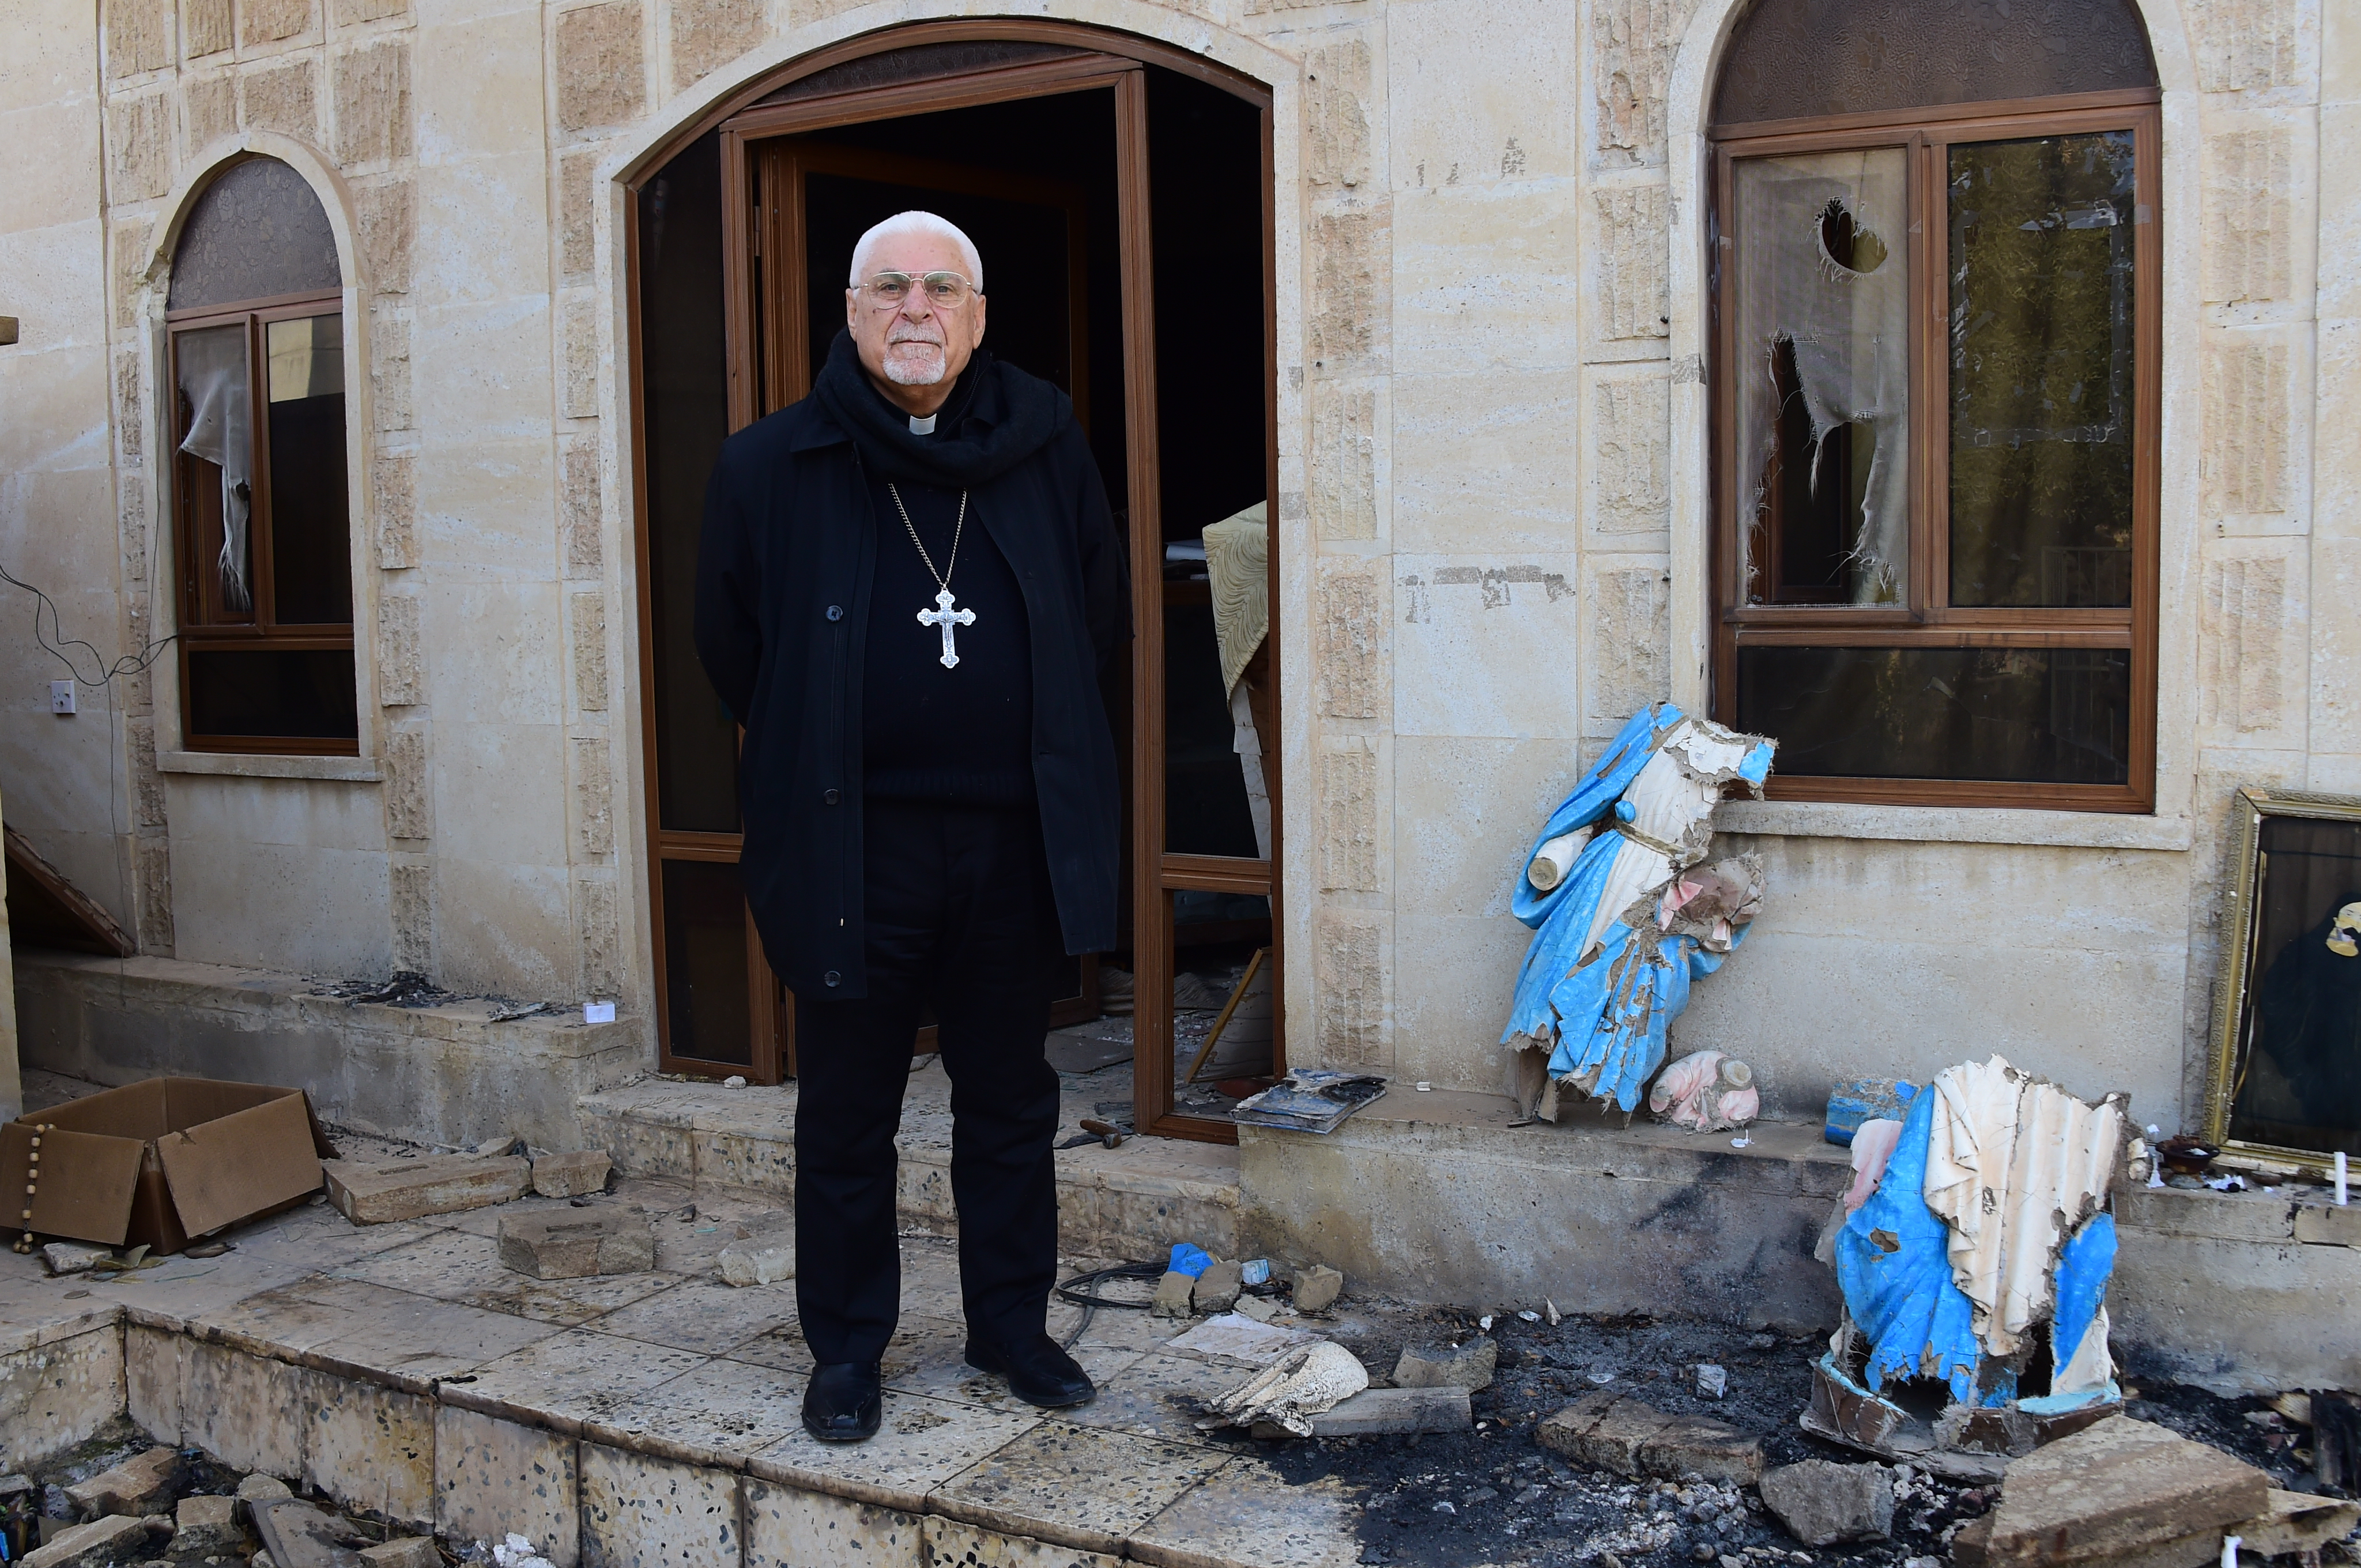 Arzobispo sirio-católico invita a recontruir la paz y aprender de los acontecimientos en esa zona